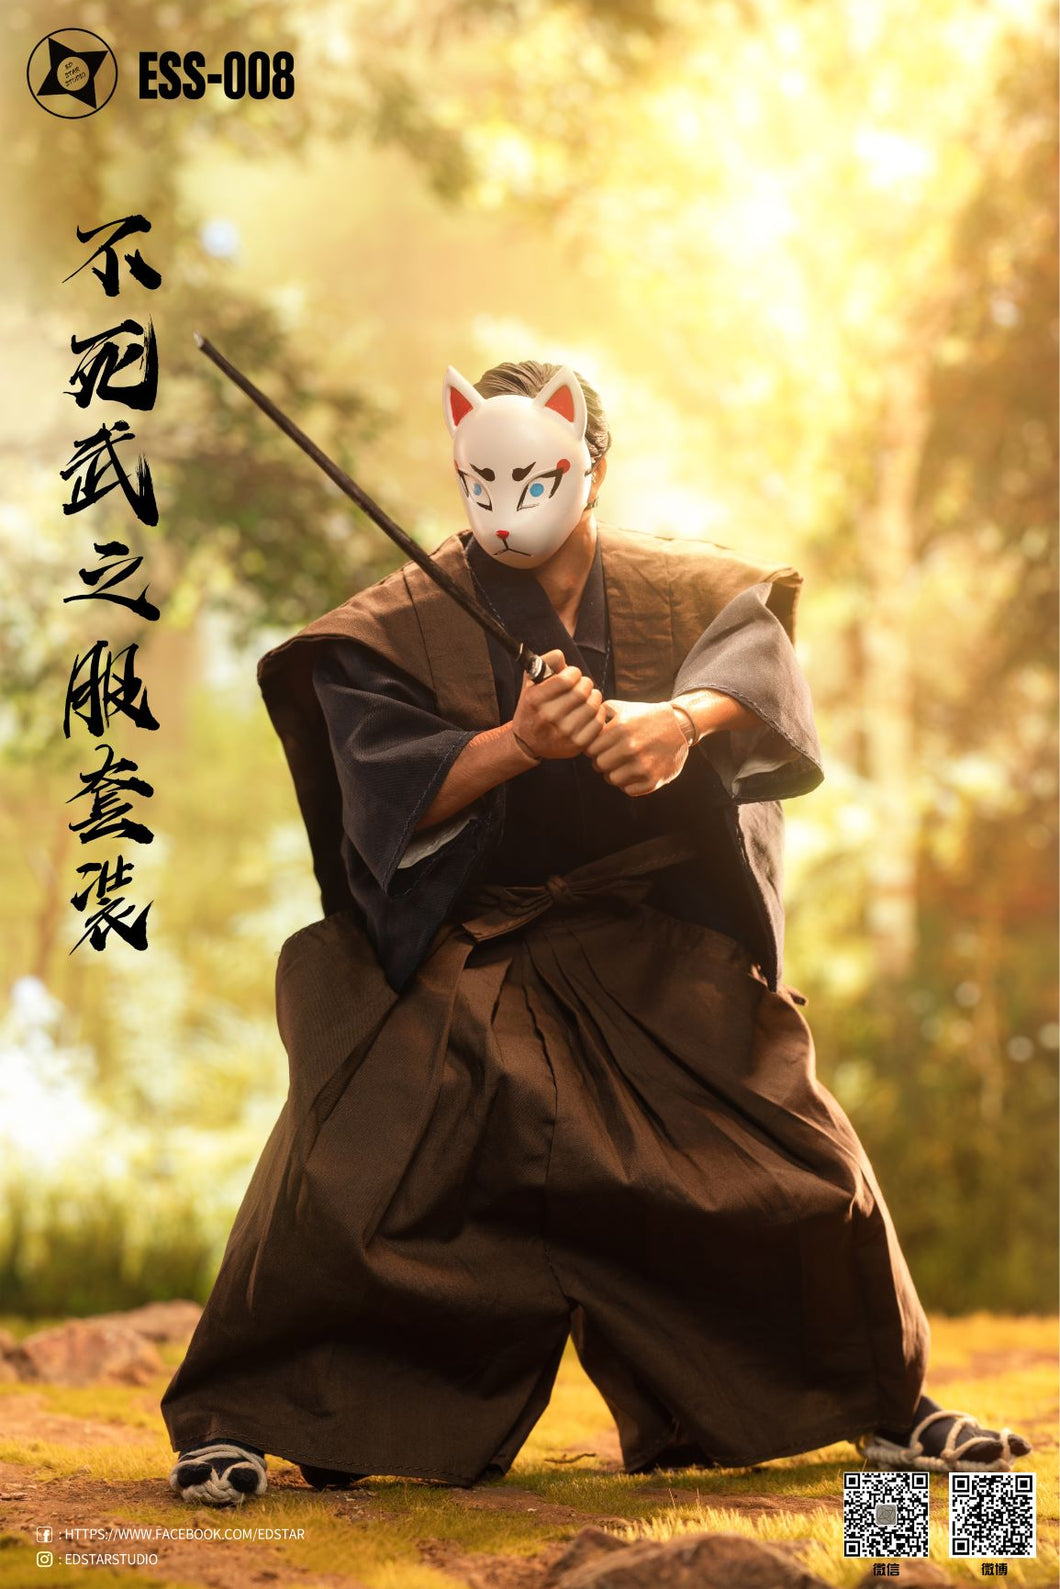 Undead Samurai - White Cat Mask - 1/6 Scale 